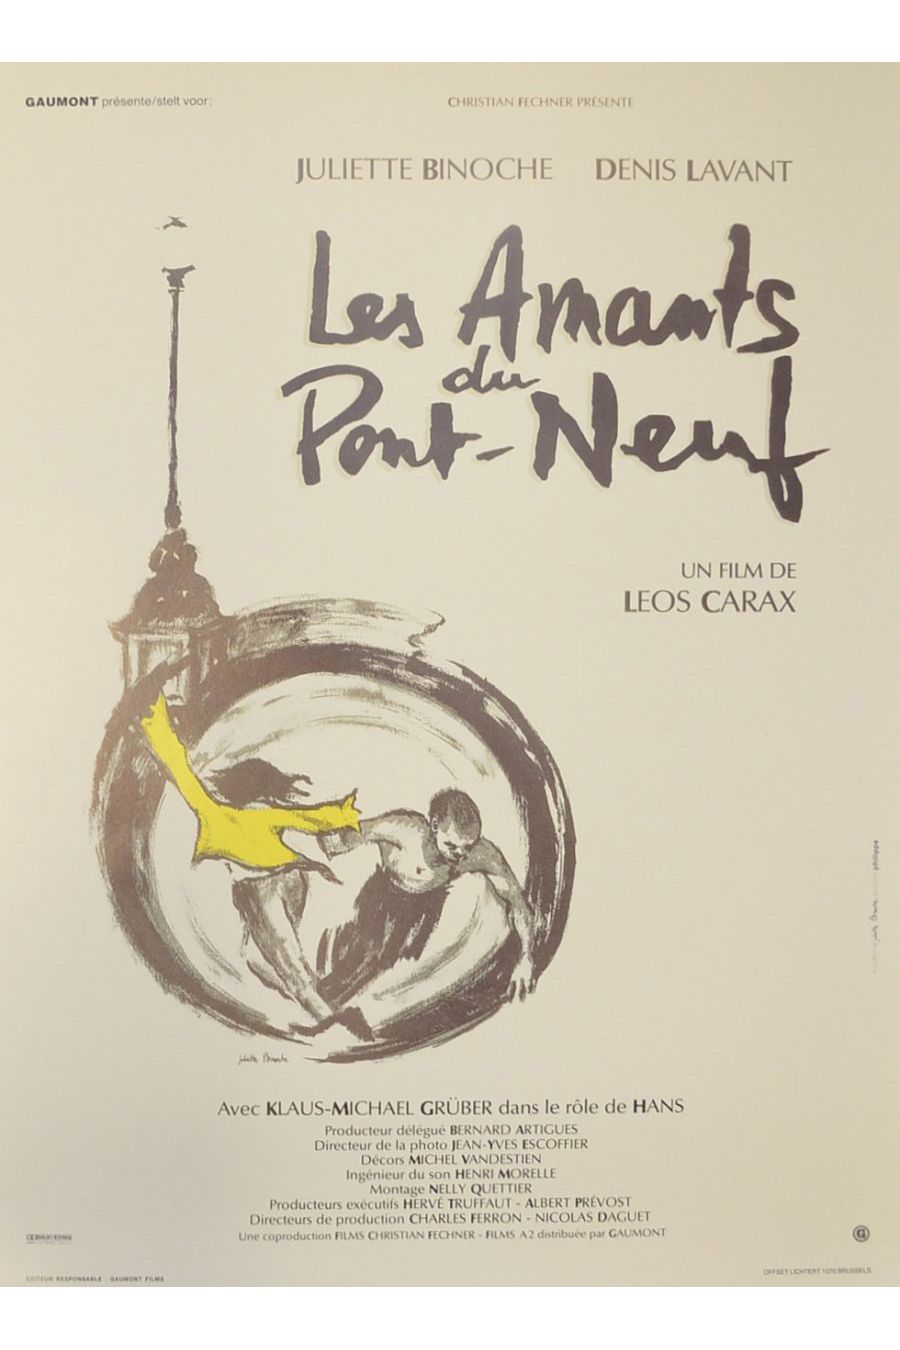 Die Liebhaber von Pont-Neuf (Leos Carax, 1991)